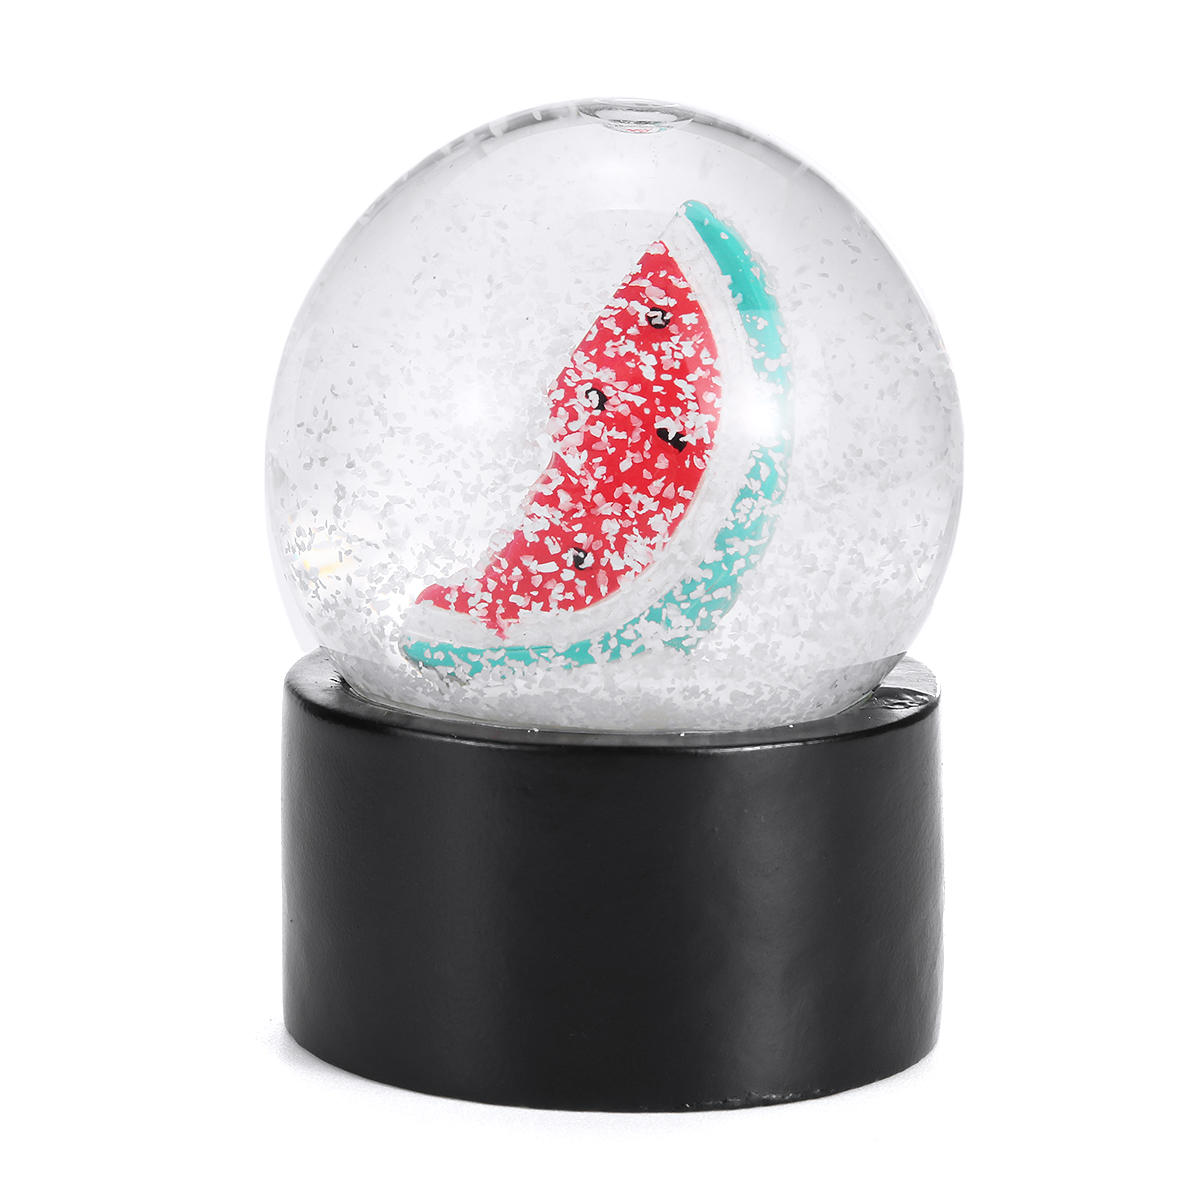 Miniso Cristal Boule De Neige En Verre De Fruits Modèle De Noël Décorations Décoratives Boule De Noël Cadeaux Bureau Décoration